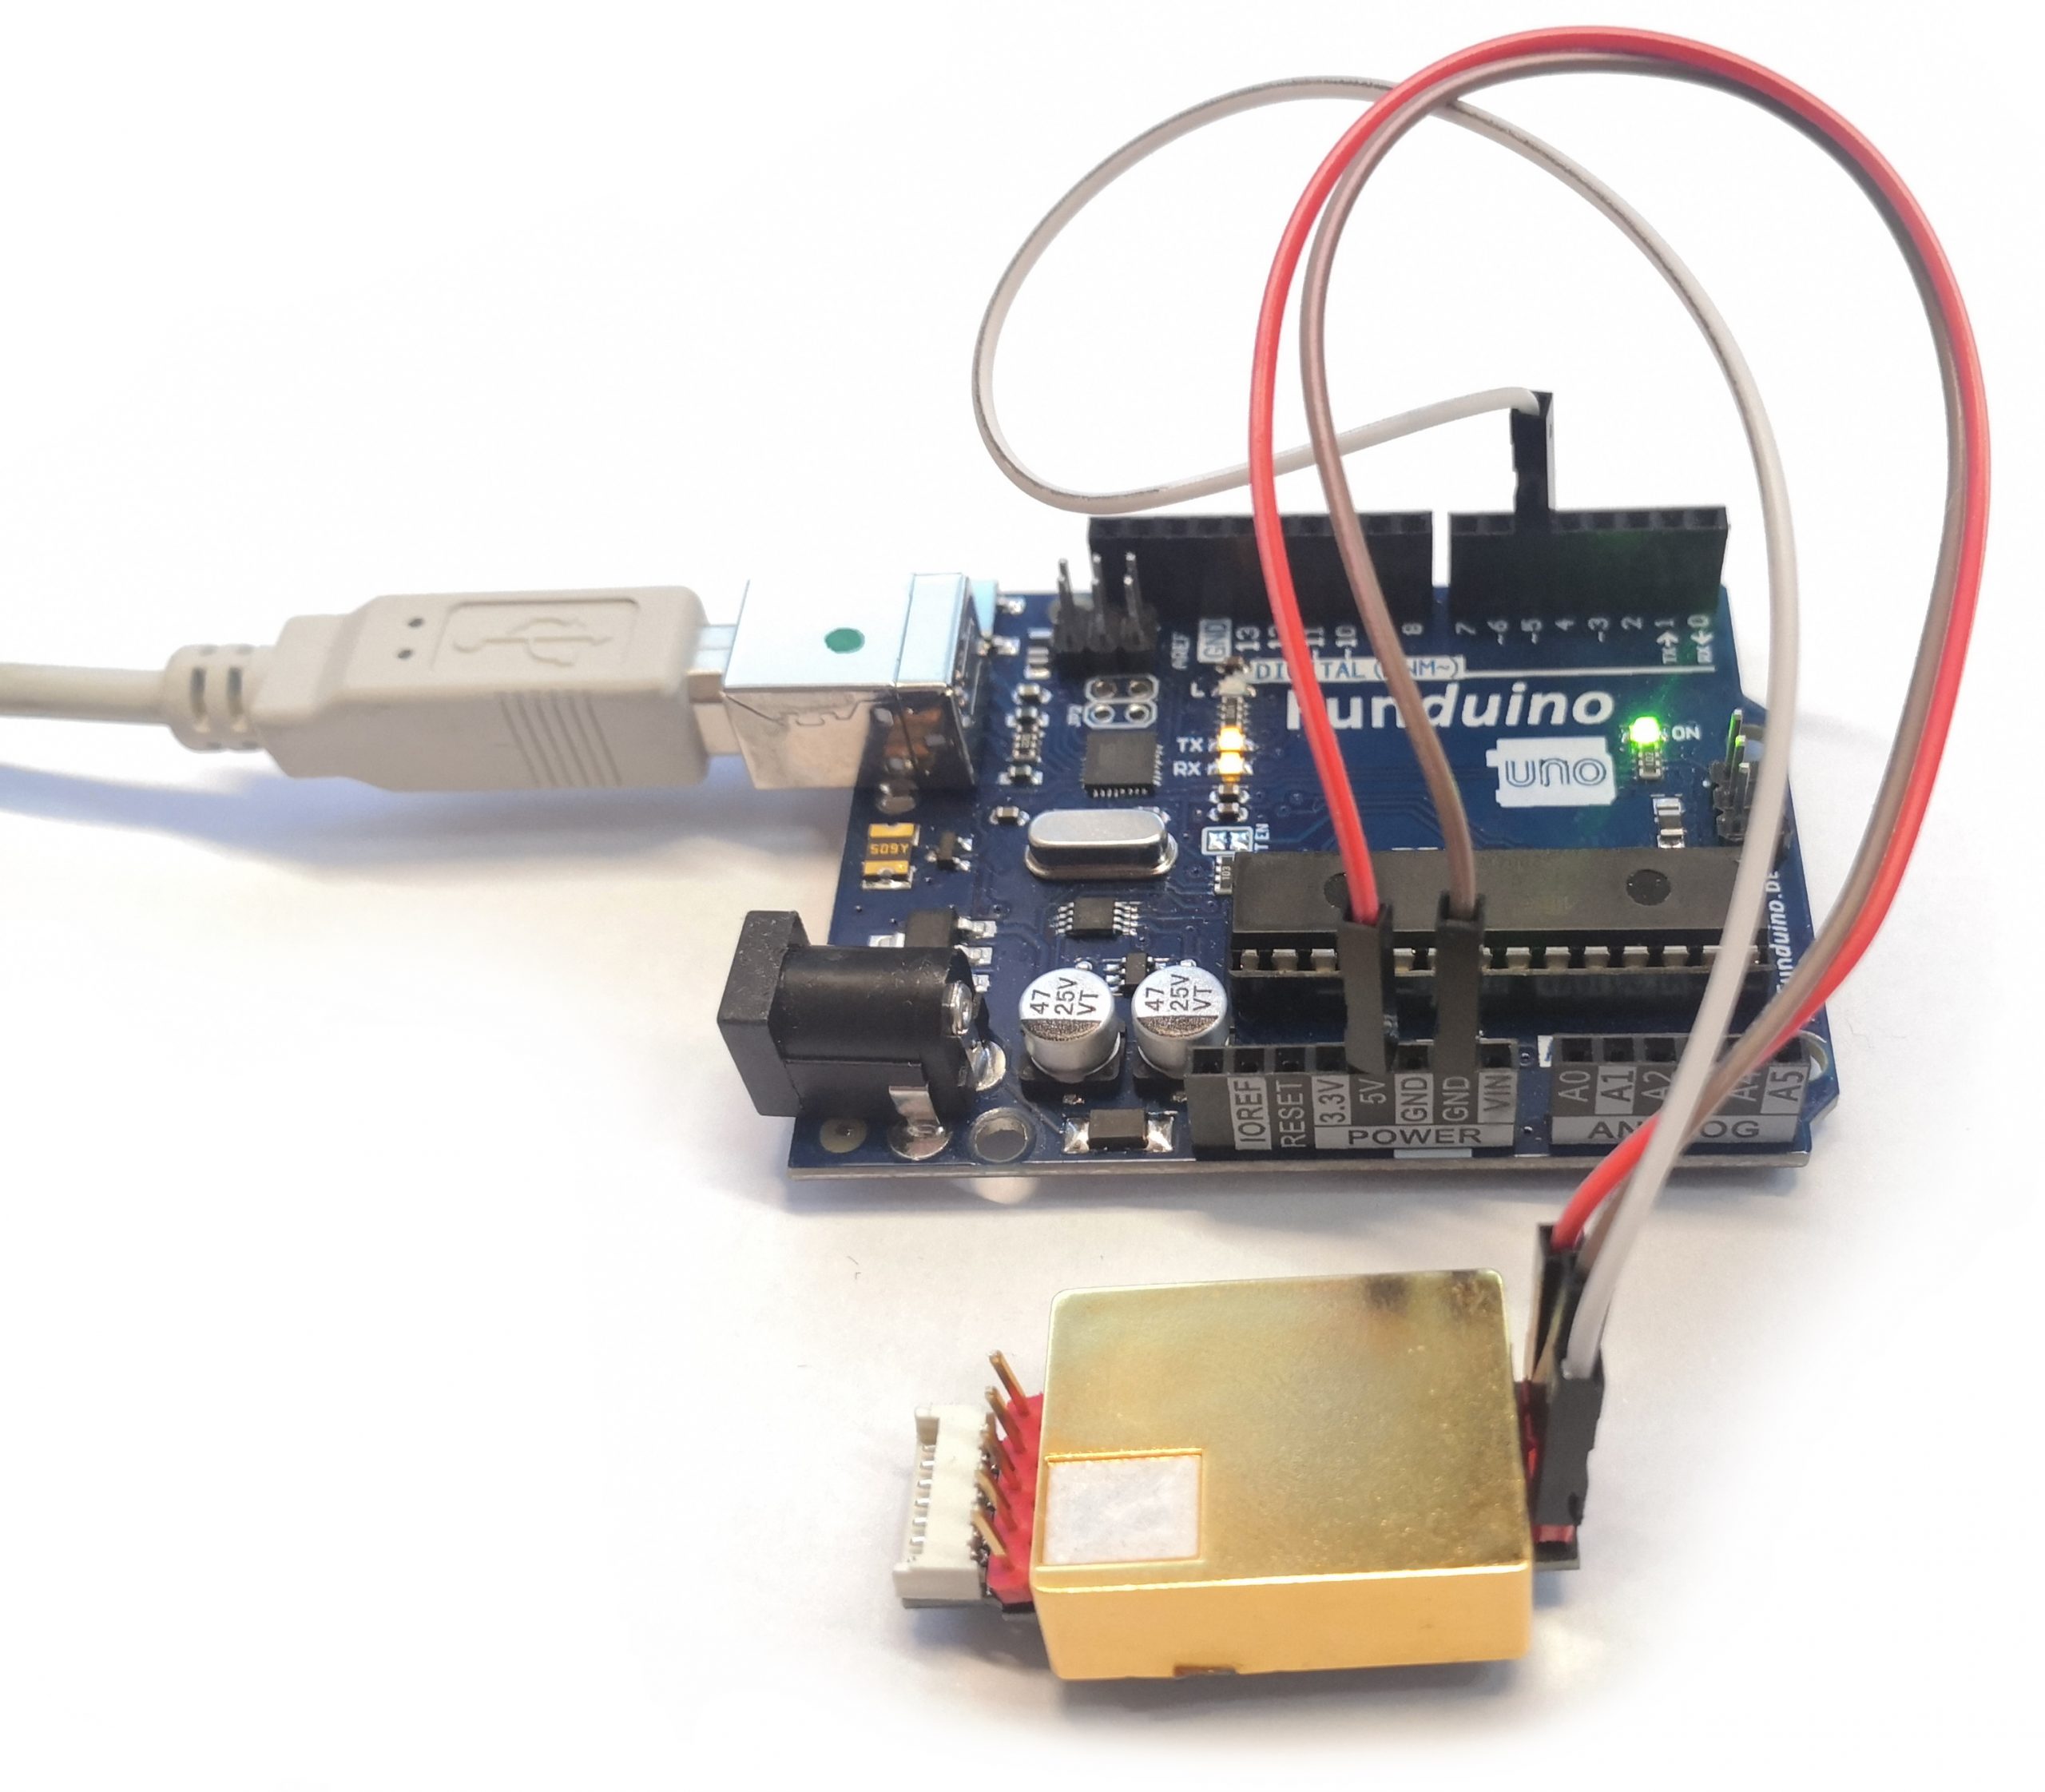 Nr. 54 - NTC Temperatursensor - Funduino - Kits und Anleitungen für Arduino